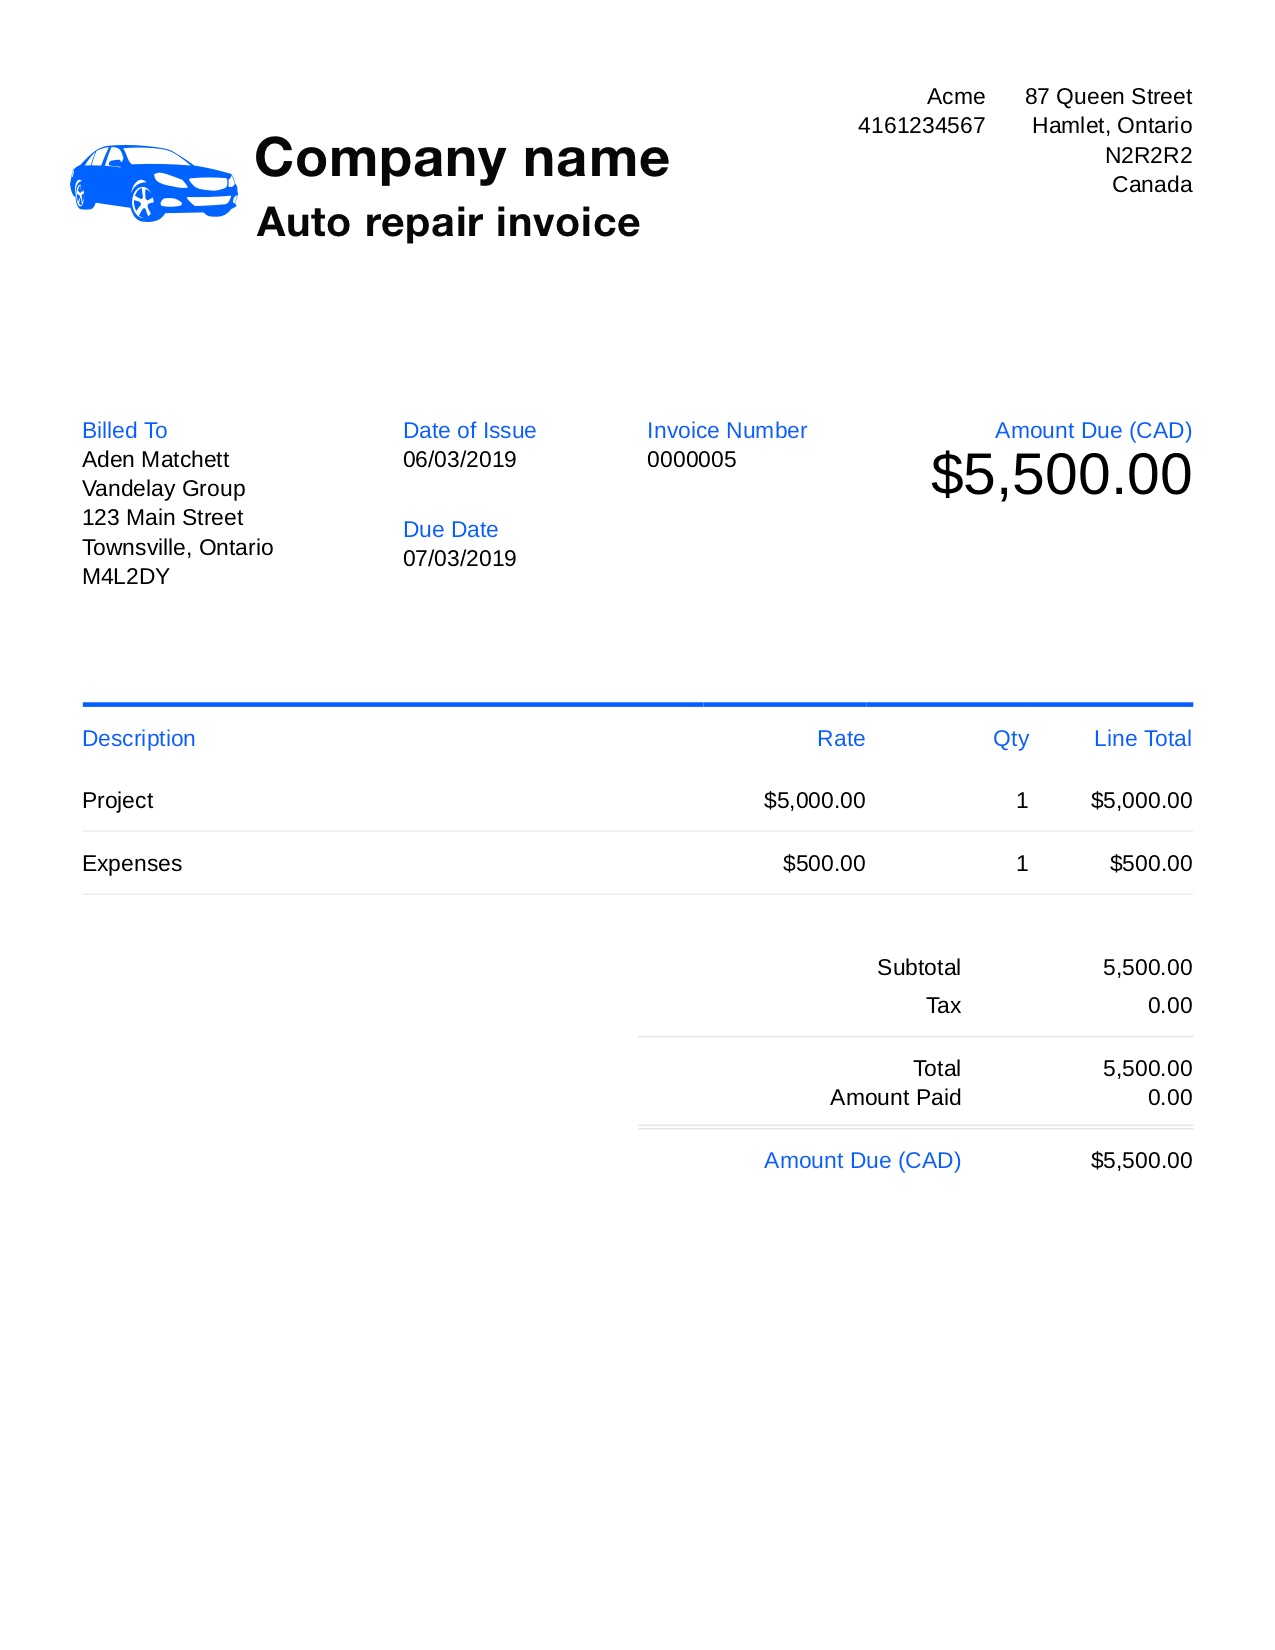 Auto repair invoice template pdf